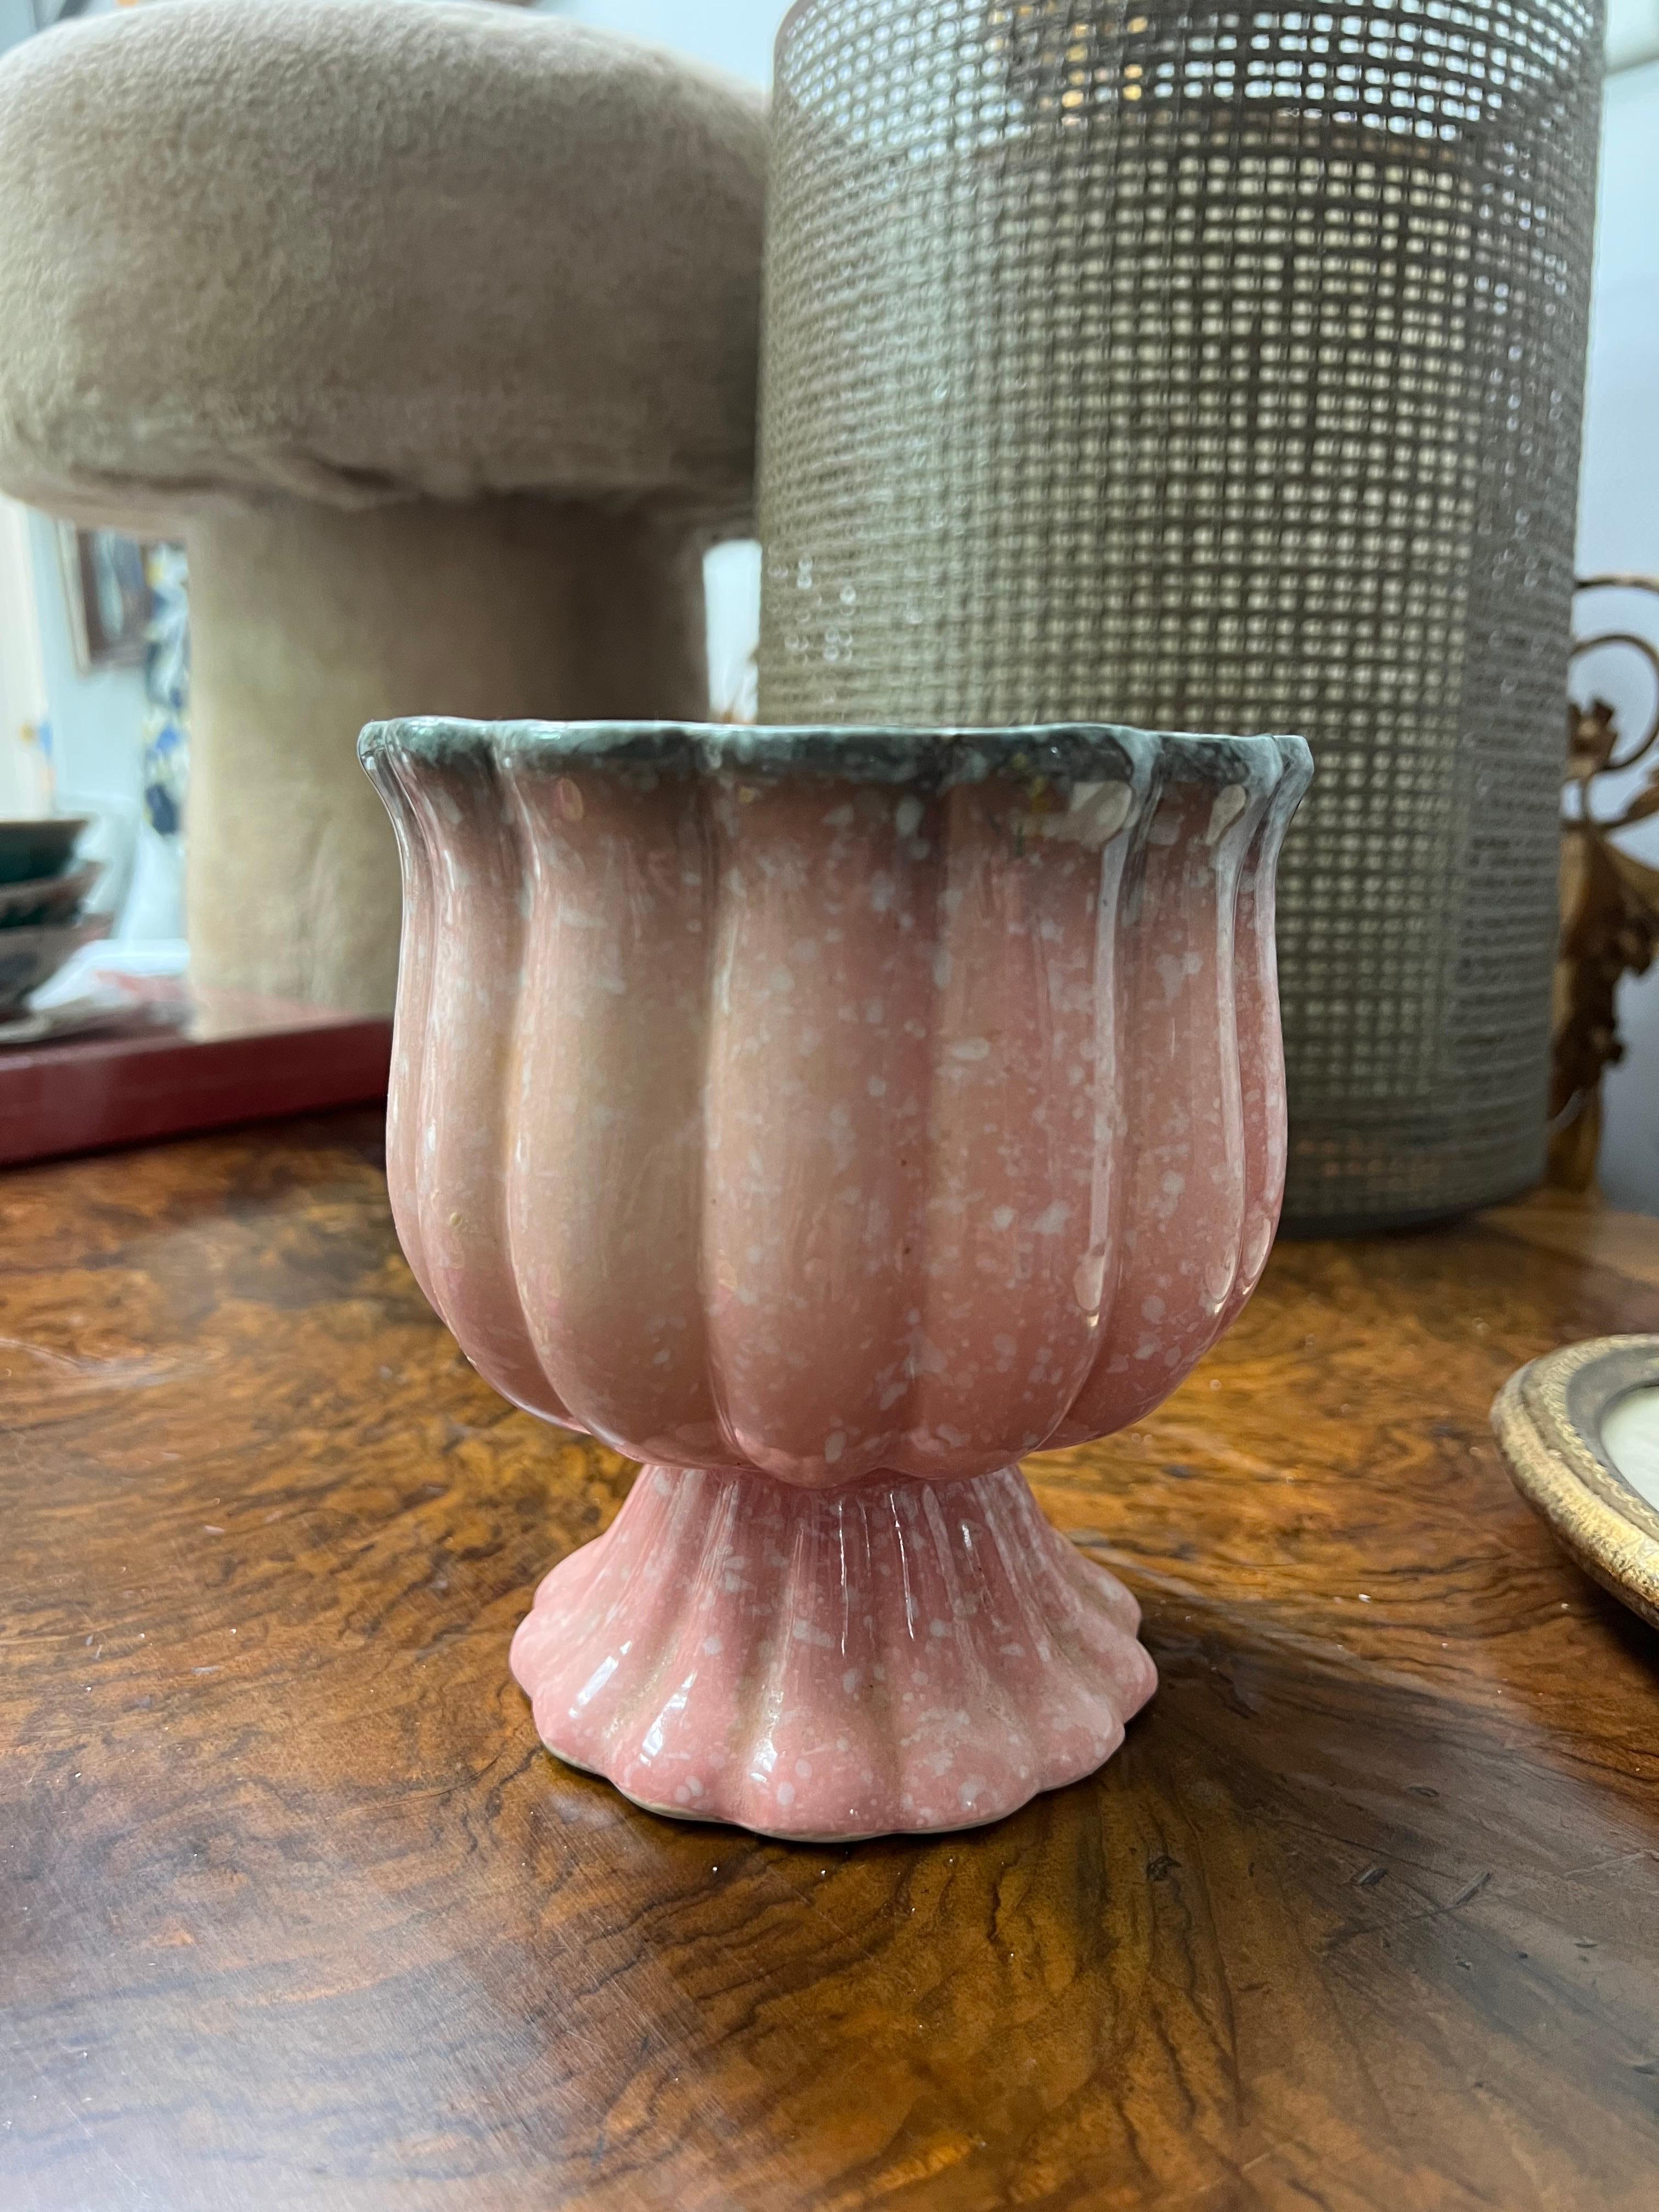 Hull Pottery Fuß rosa türkis gerippt Urne Pflanzer Vase gesprenkelt woodland.  Tolles Mid-Mod-Stück für Ihre Sammlung!  Keine Chips oder Risse.